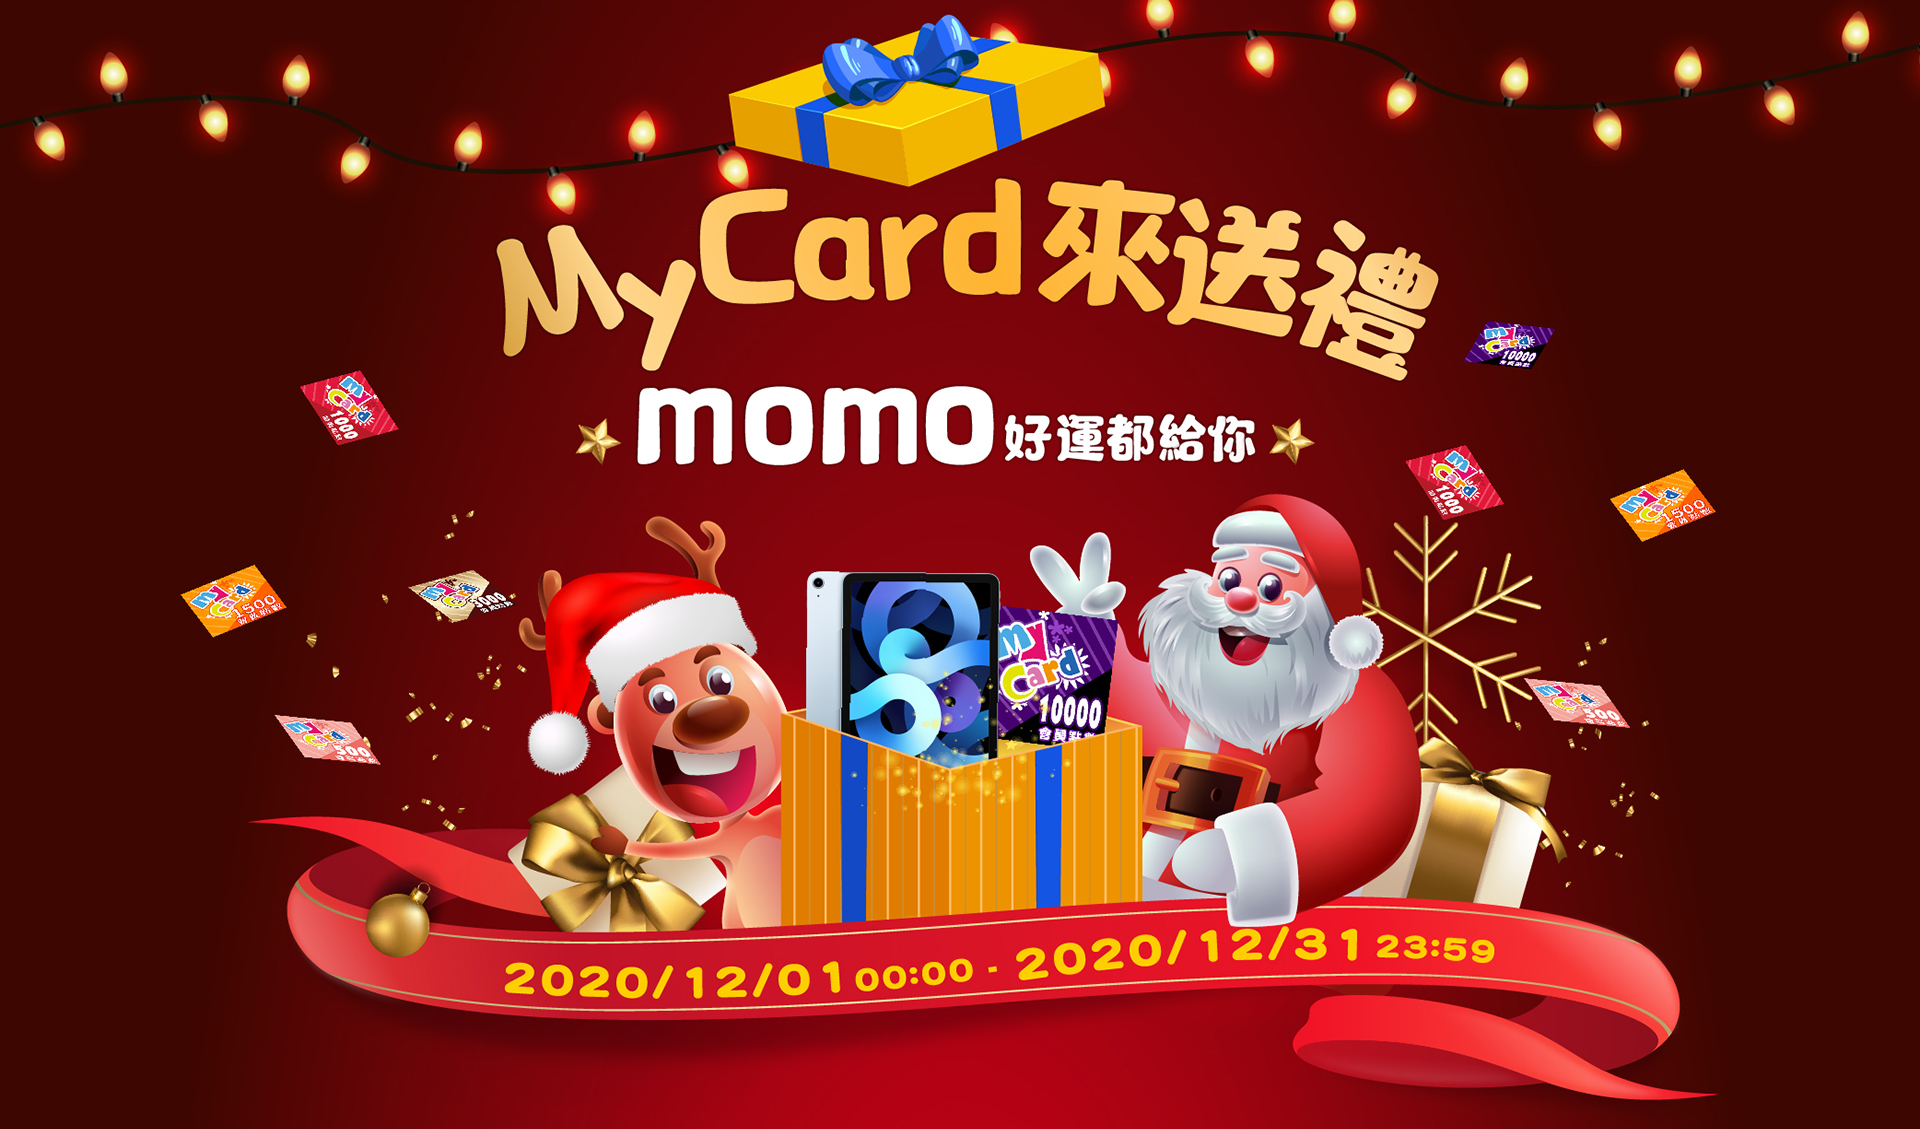   《電商x會員活動》MyCard來送禮~momo好運都給你！